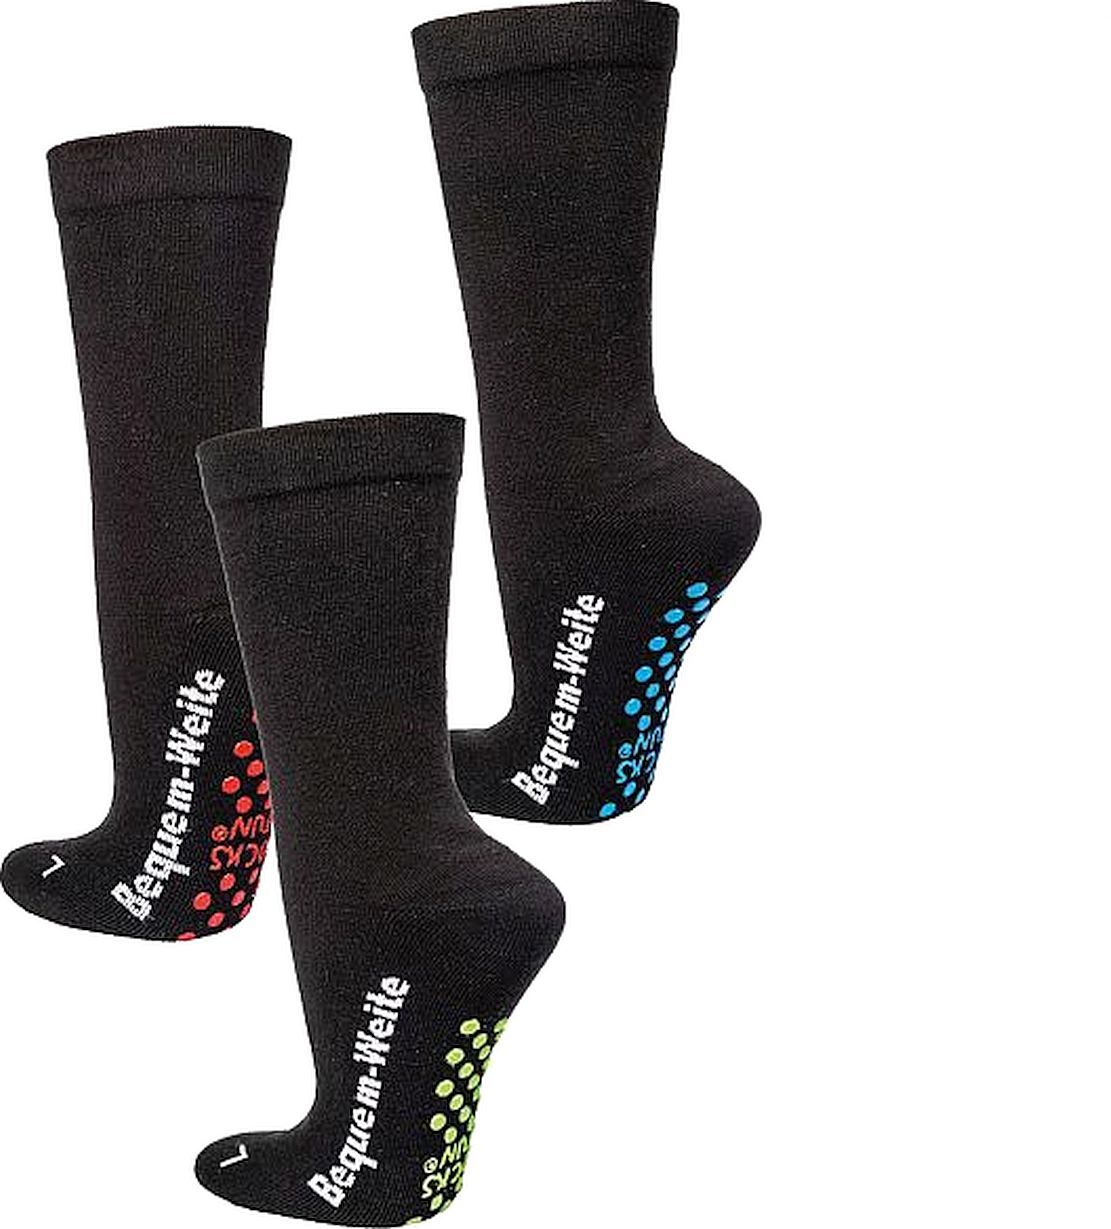 Wellness-Socken  mit Polstersohle, ABS für Menschen mit Problemfüßen schützende Polstersohle,  antibakteriell, rutschfest für Teenager, Damen und Herren, 2 Paar